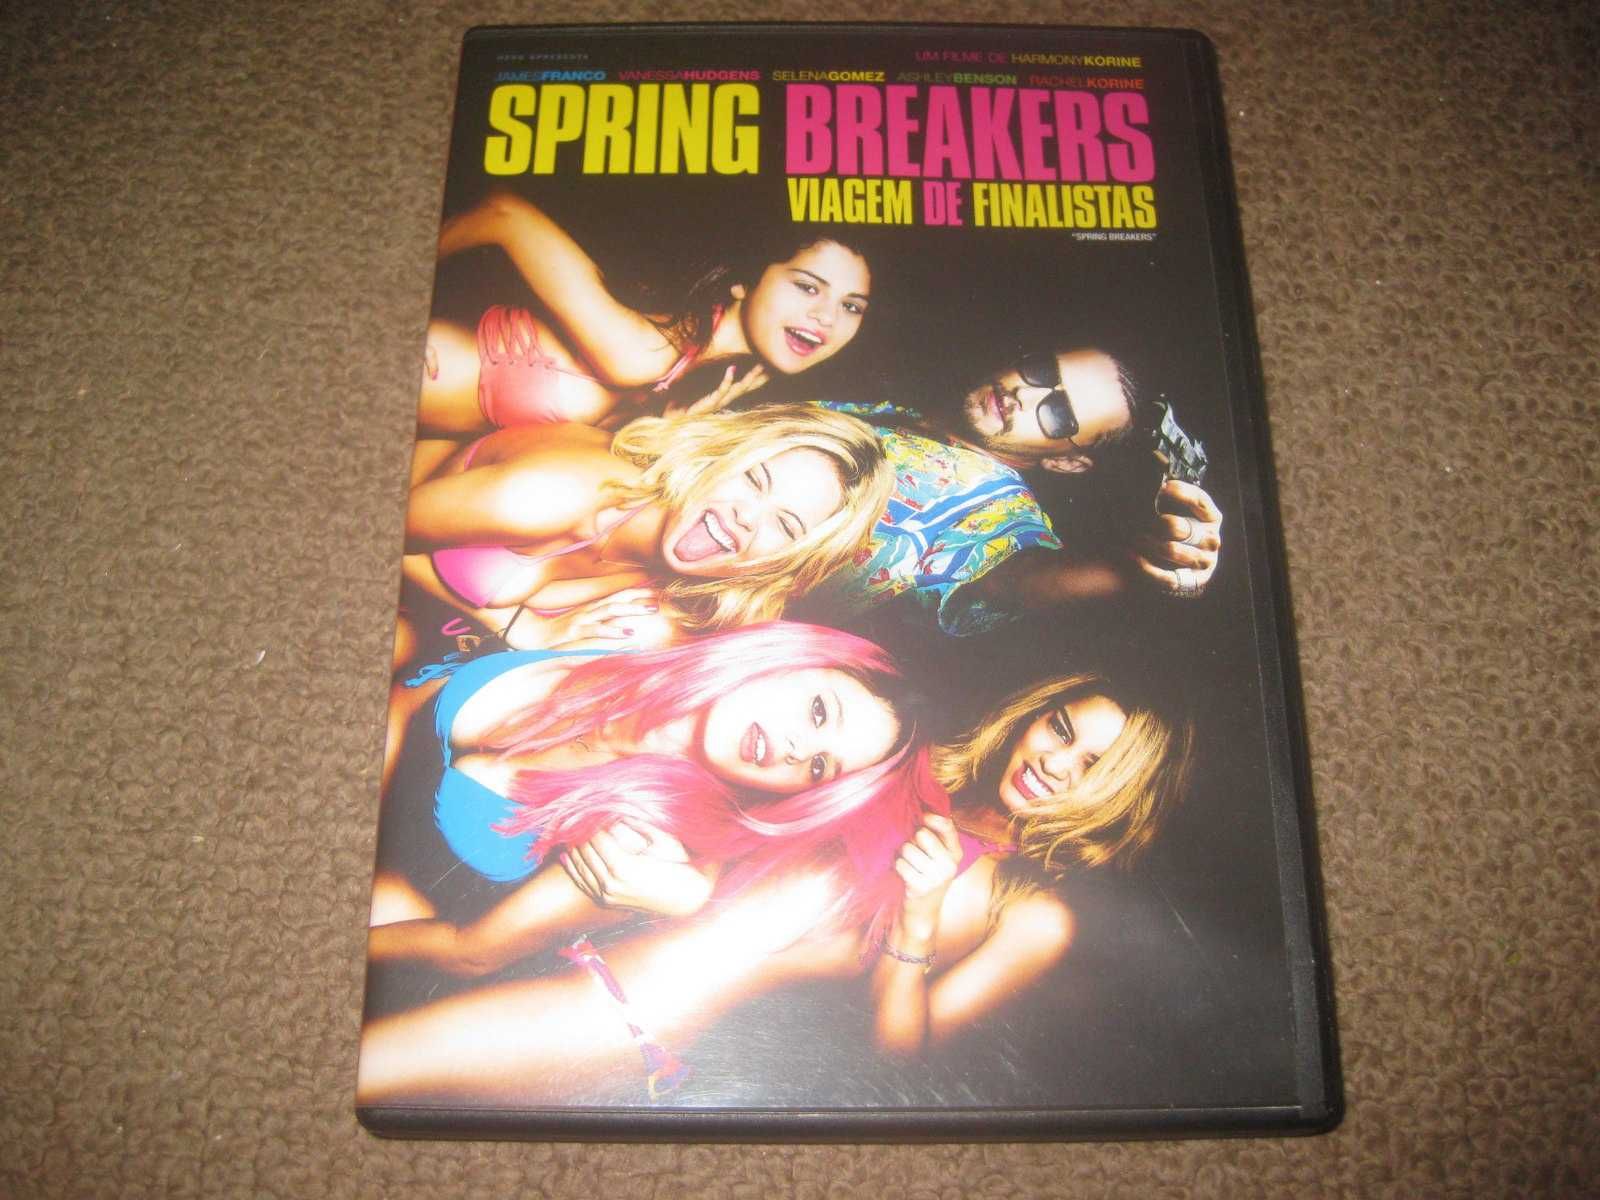 DVD "Spring Breakers - Viagem de Finalistas" com Selena Gomez